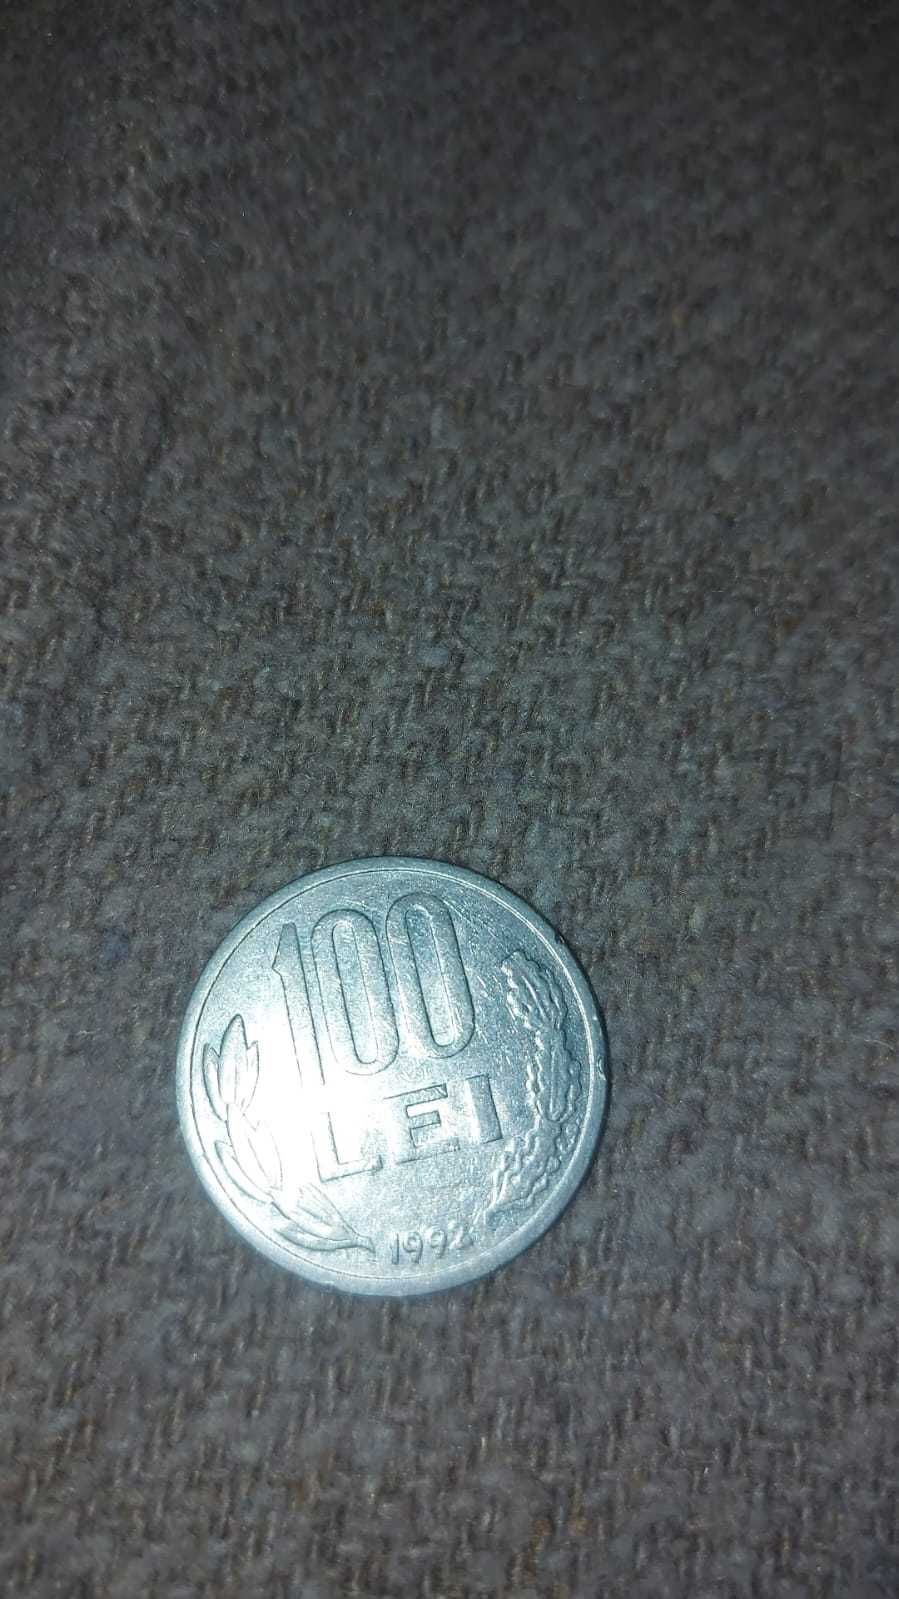 Moneda 100 lei Mihai Viteazu 1992